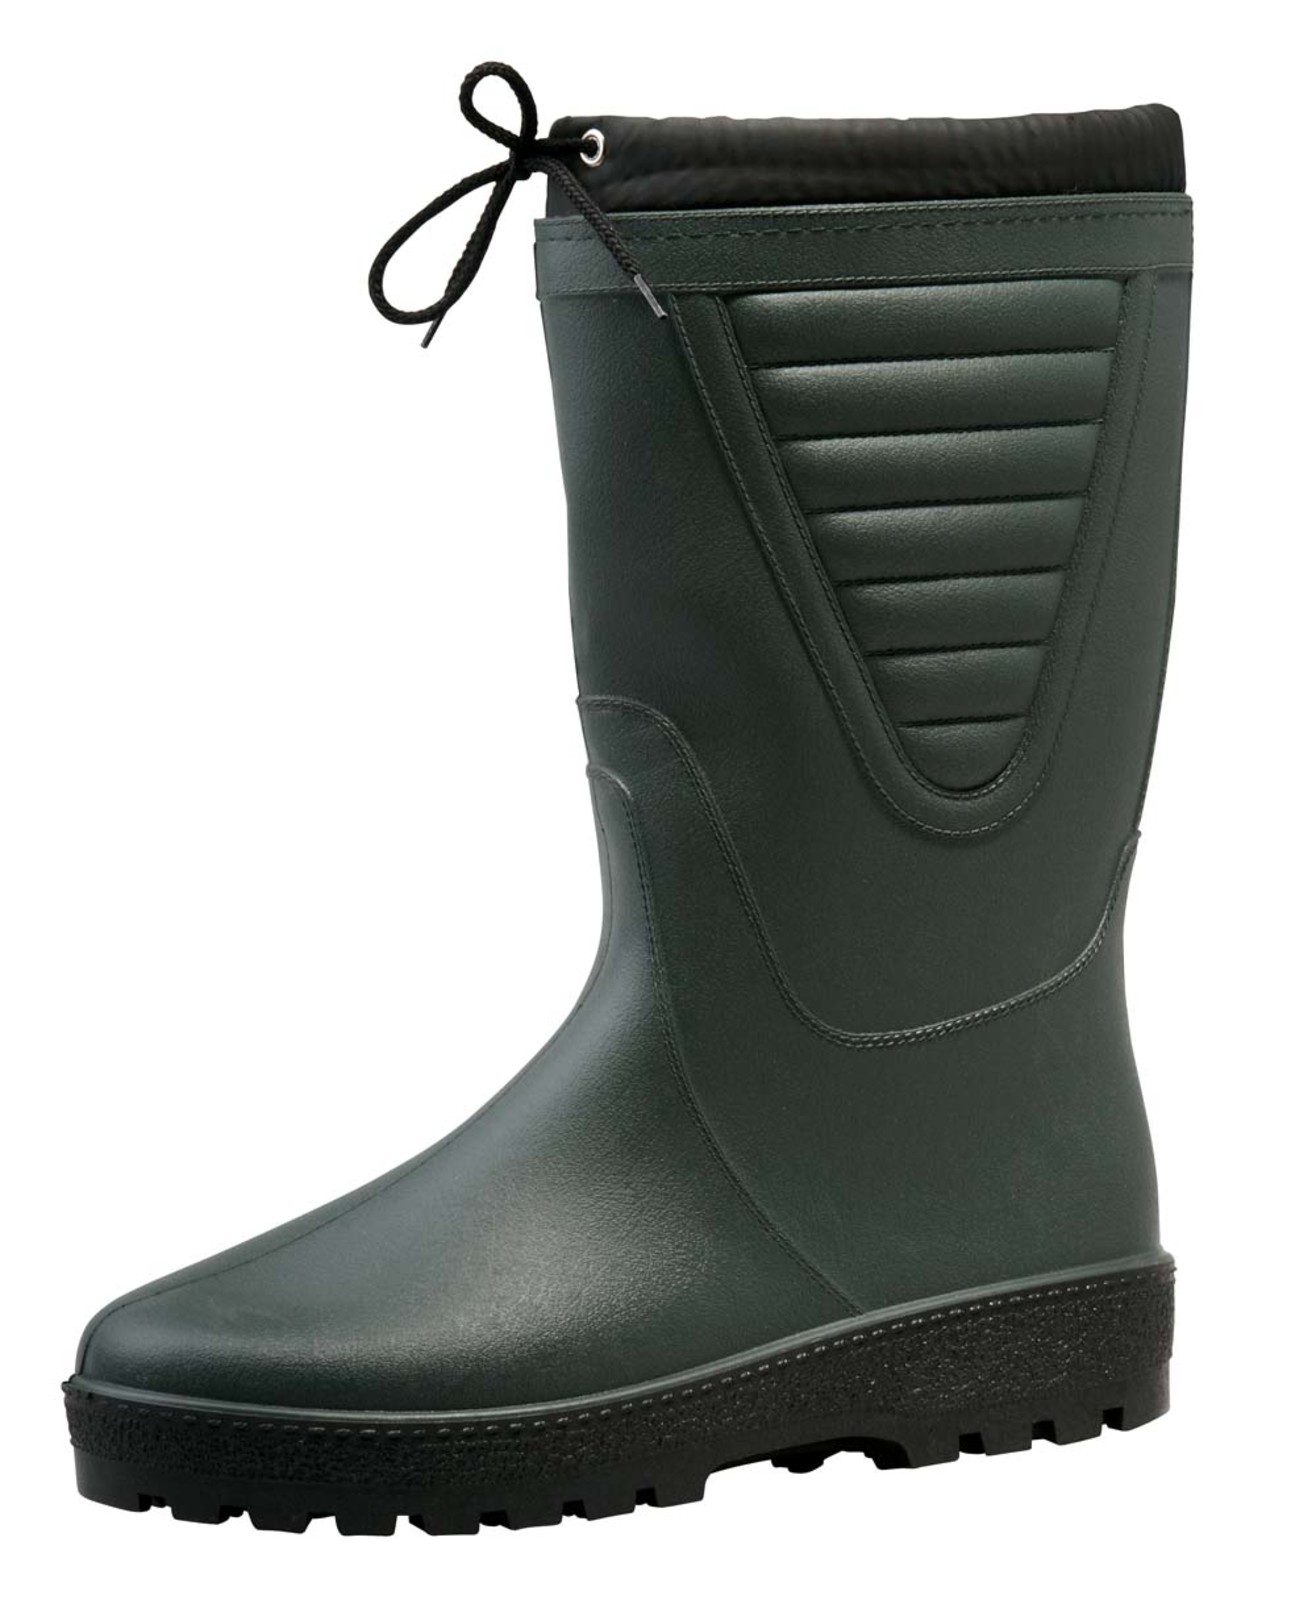 Zateplené čižmy Boots Polar - veľkosť: 37, farba: zelená